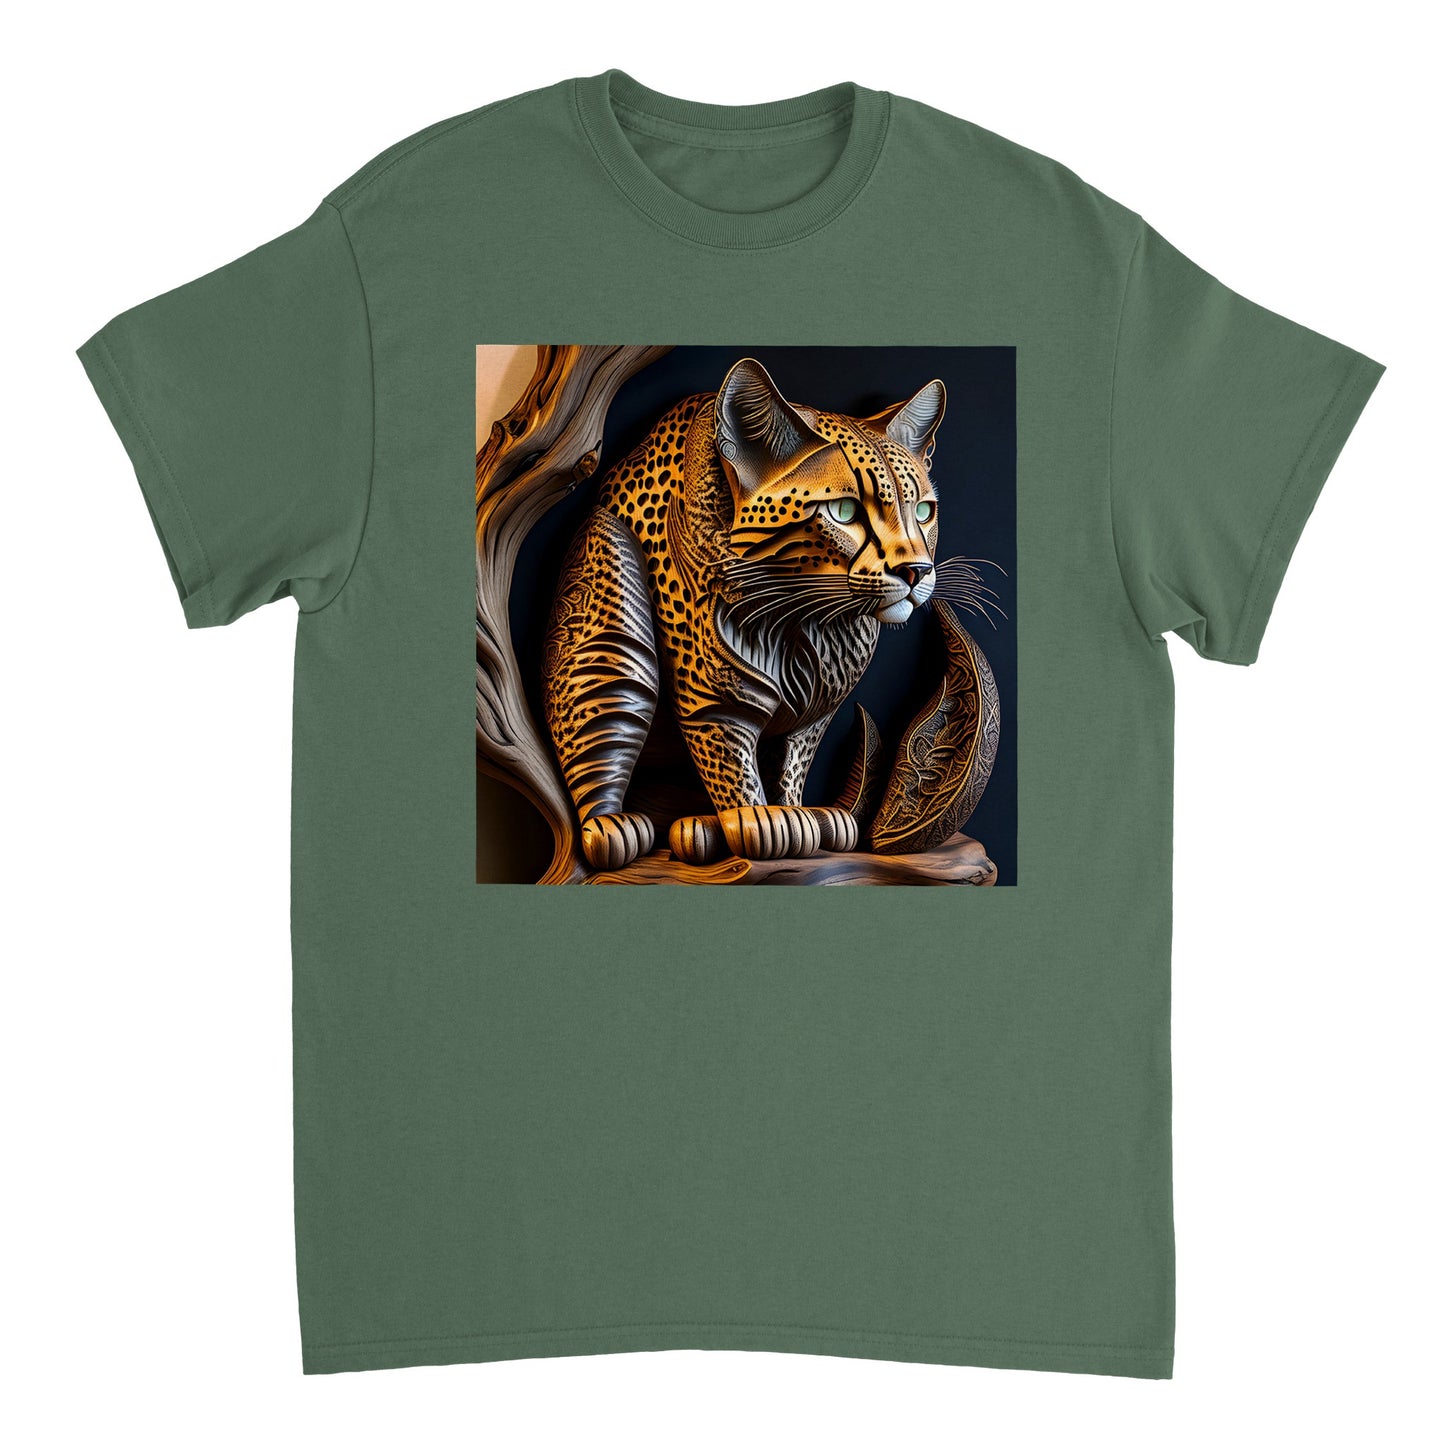 3D Wooden Animal Art - Heavyweight Unisex Crewneck T-shirt 49